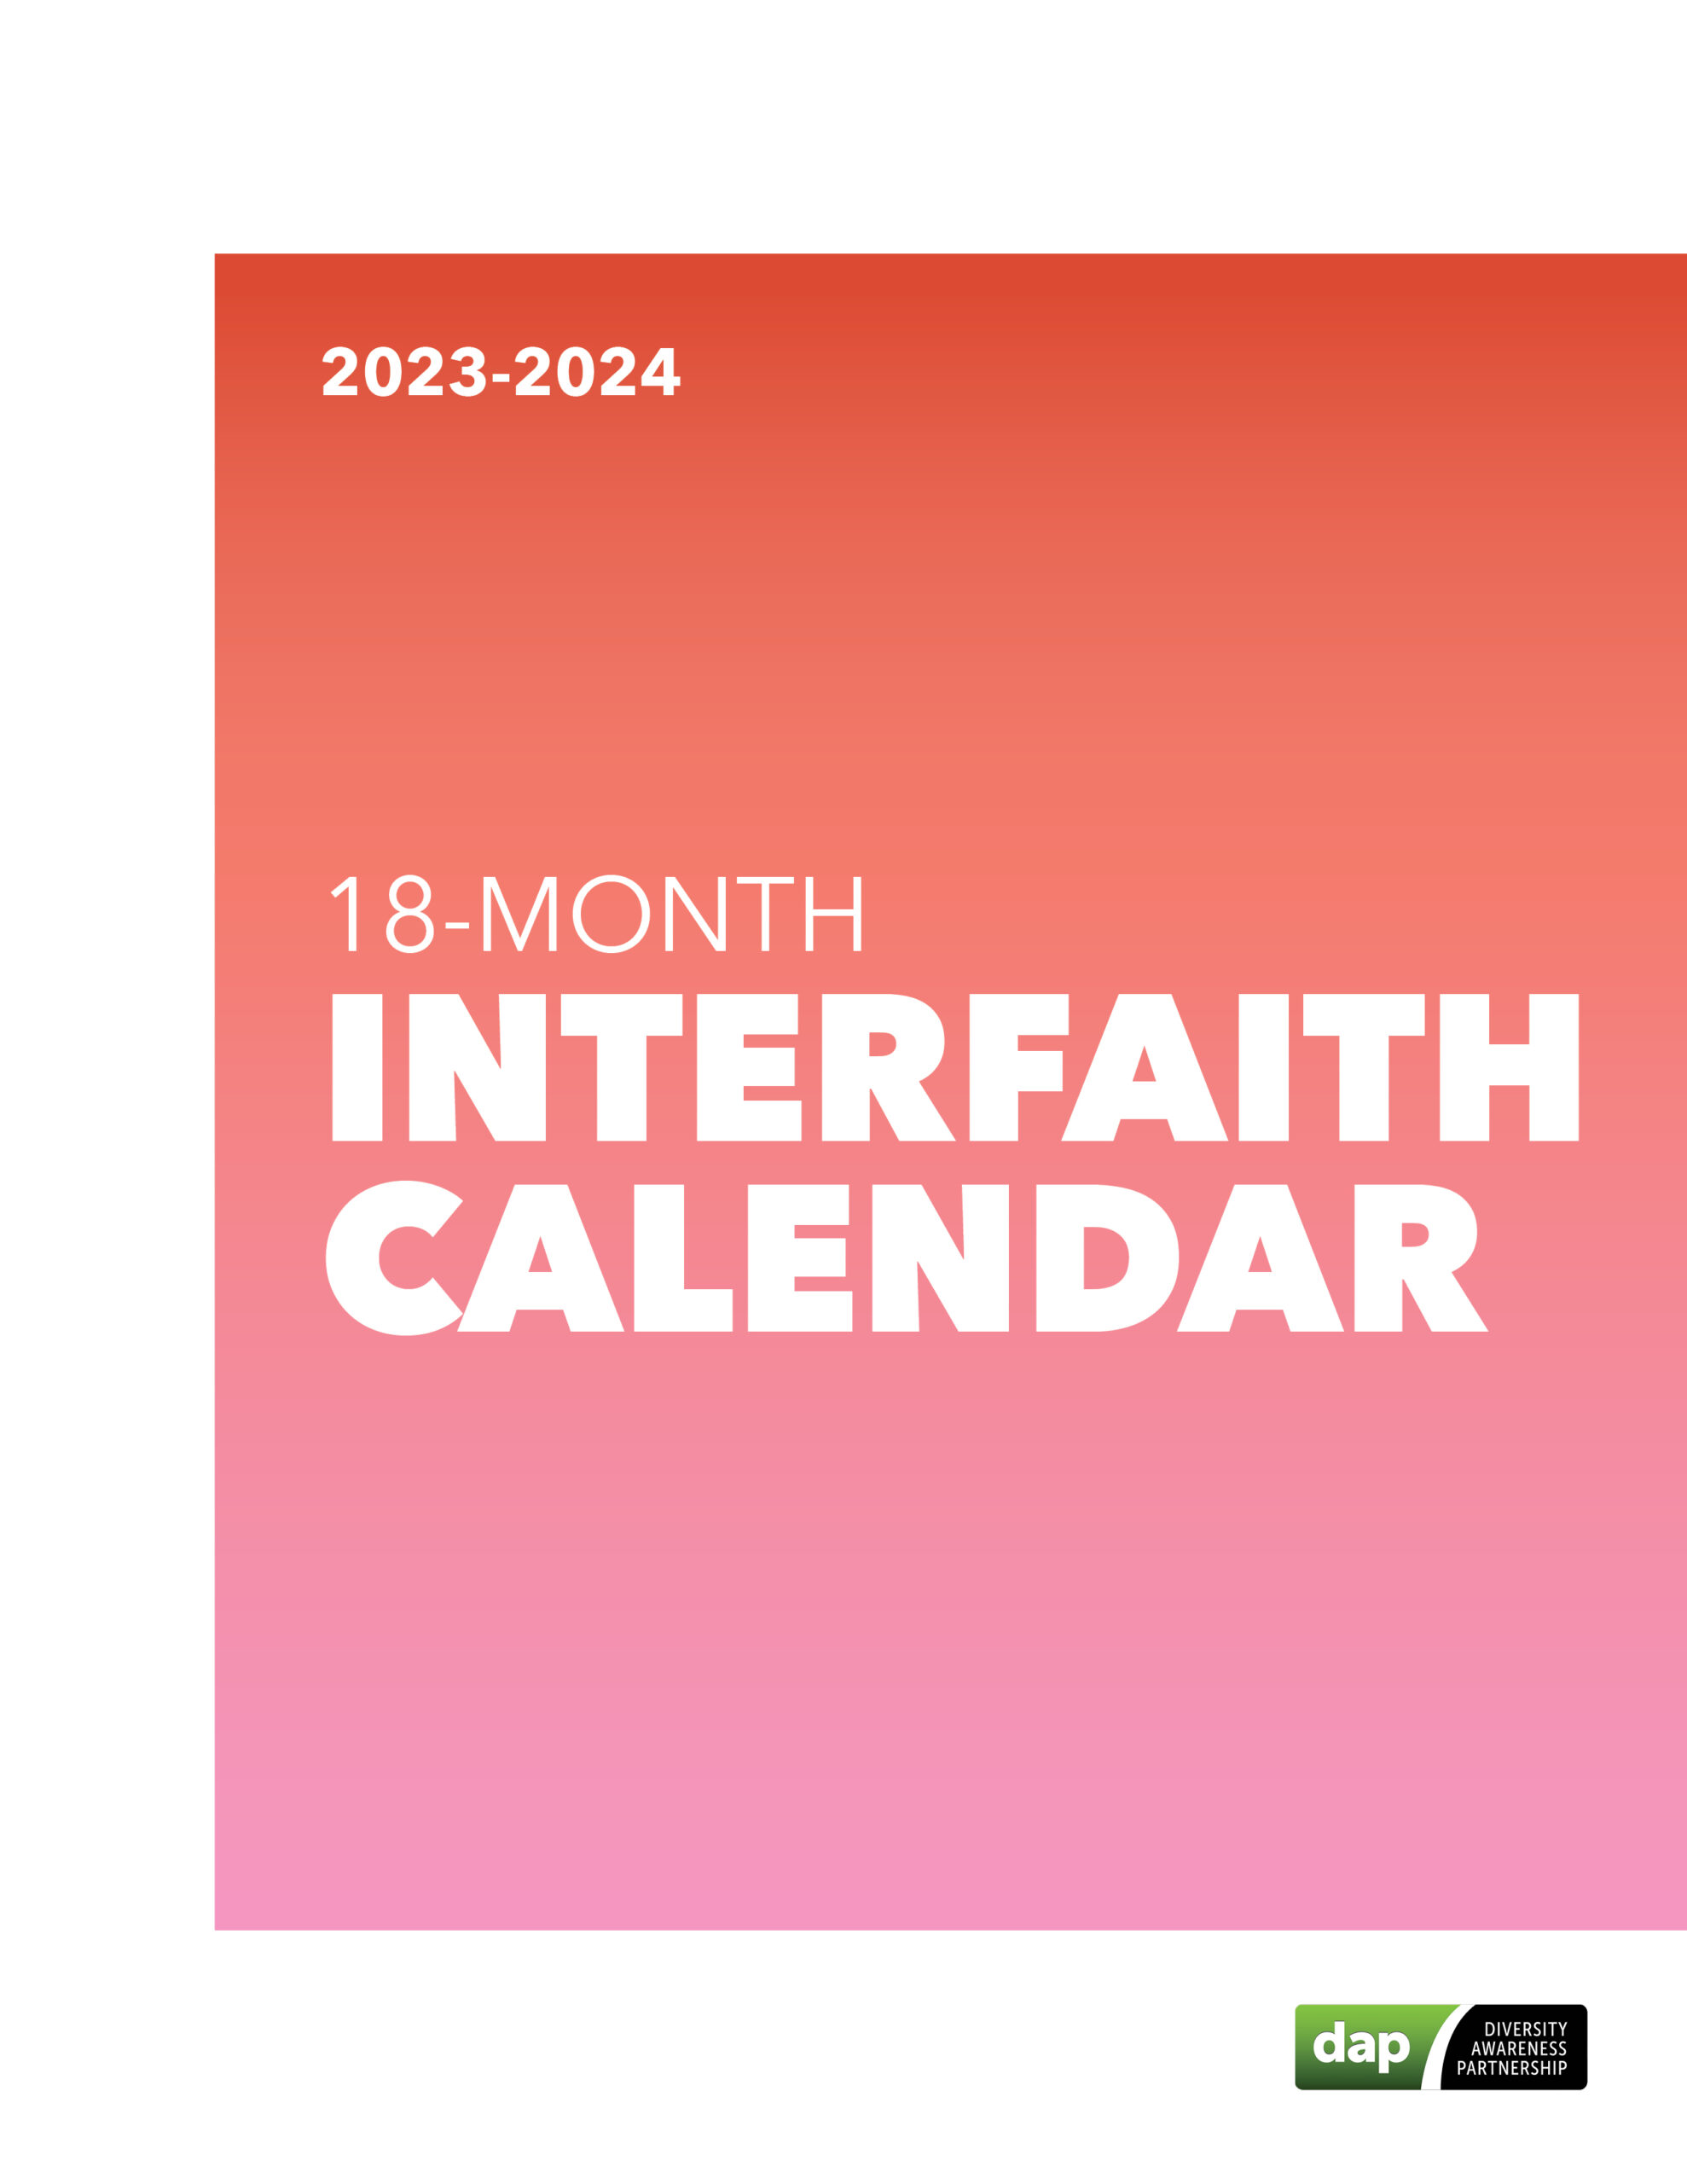 20232024 Interfaith Calendar Diversity Awareness Partnership